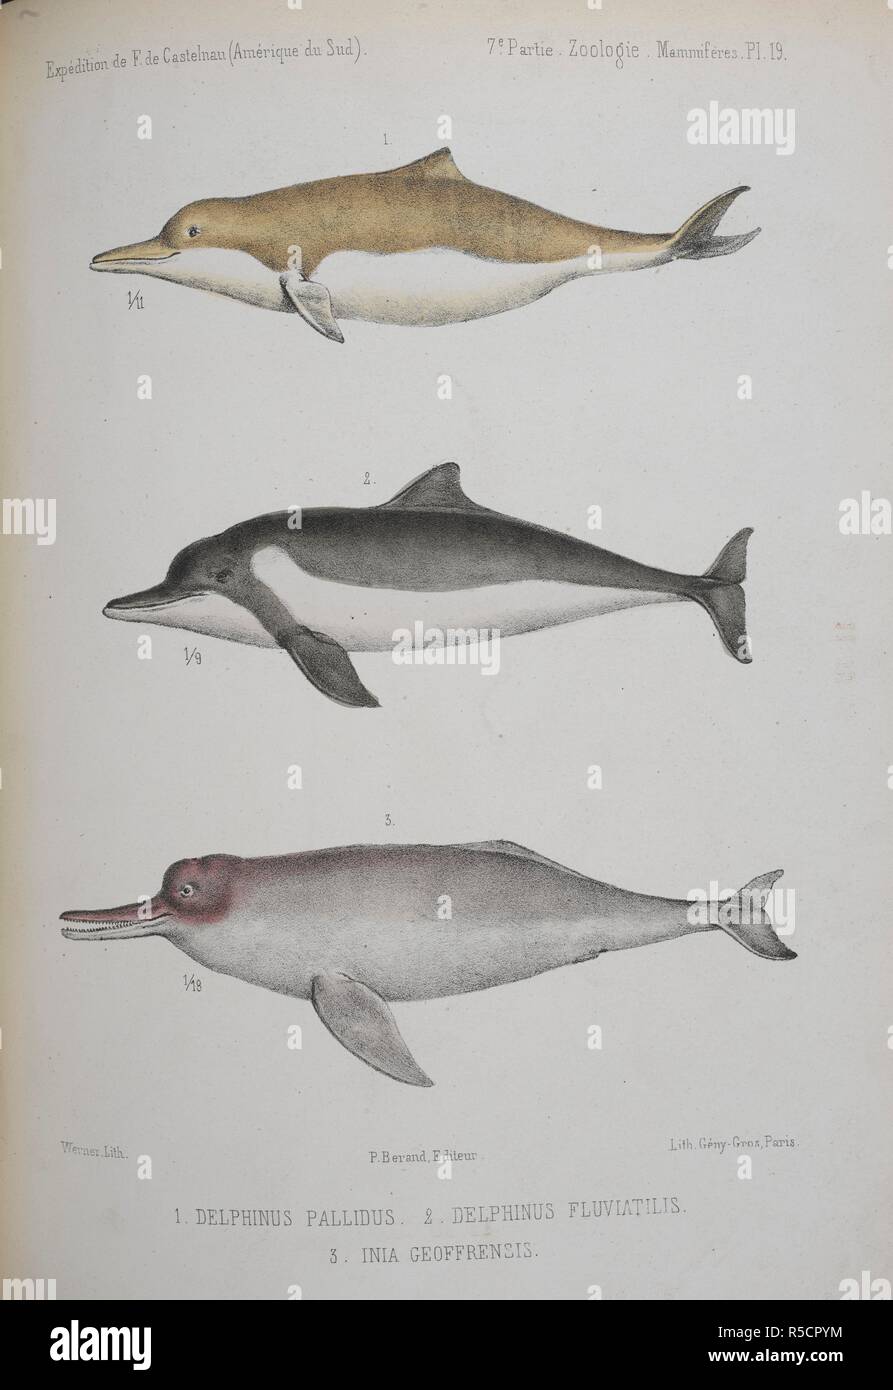 1. Delphinus pallido. (Ora noto come Sotalia fluviatilis. 2. Delphinus  Fluviatlis.(come sopra.) 3. Geoffrensis Inia. Amazon delfini di fiume, o  rosa delfini di fiume. 1 e 2 sono sella-backed delfini. Animaux ou